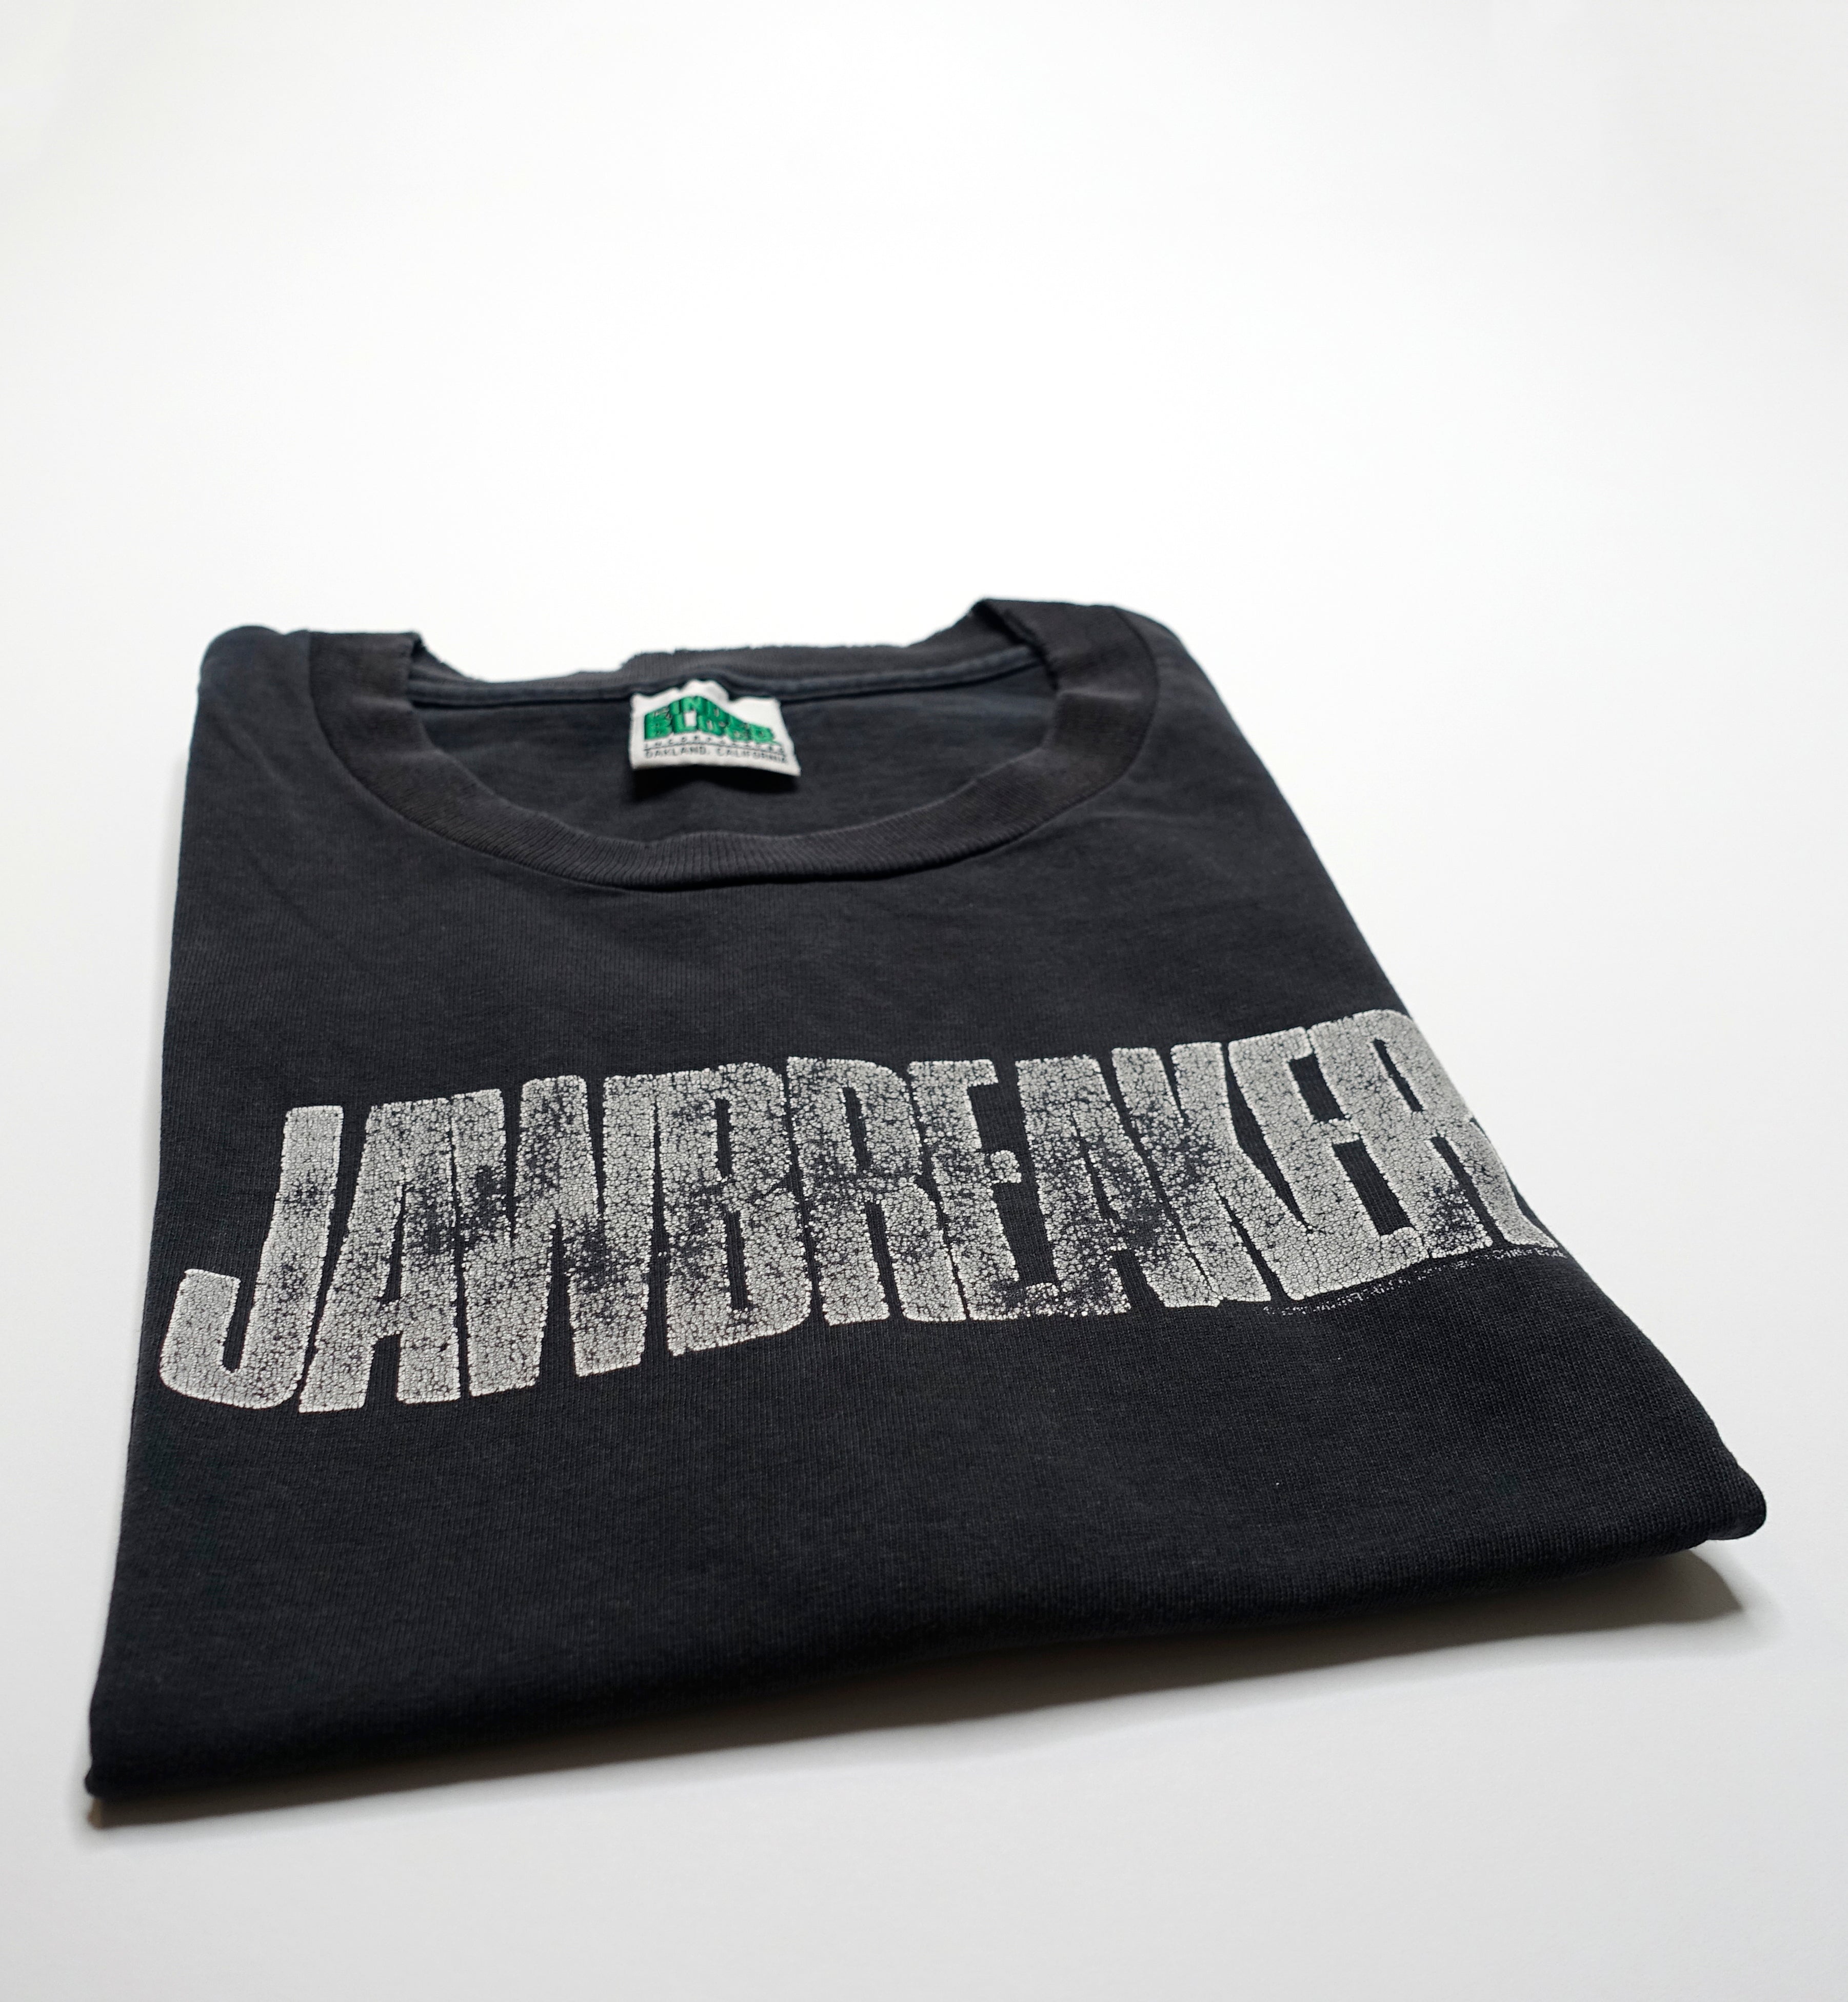 Jawbreaker - Silver Logo 2004 Shirt Size Large